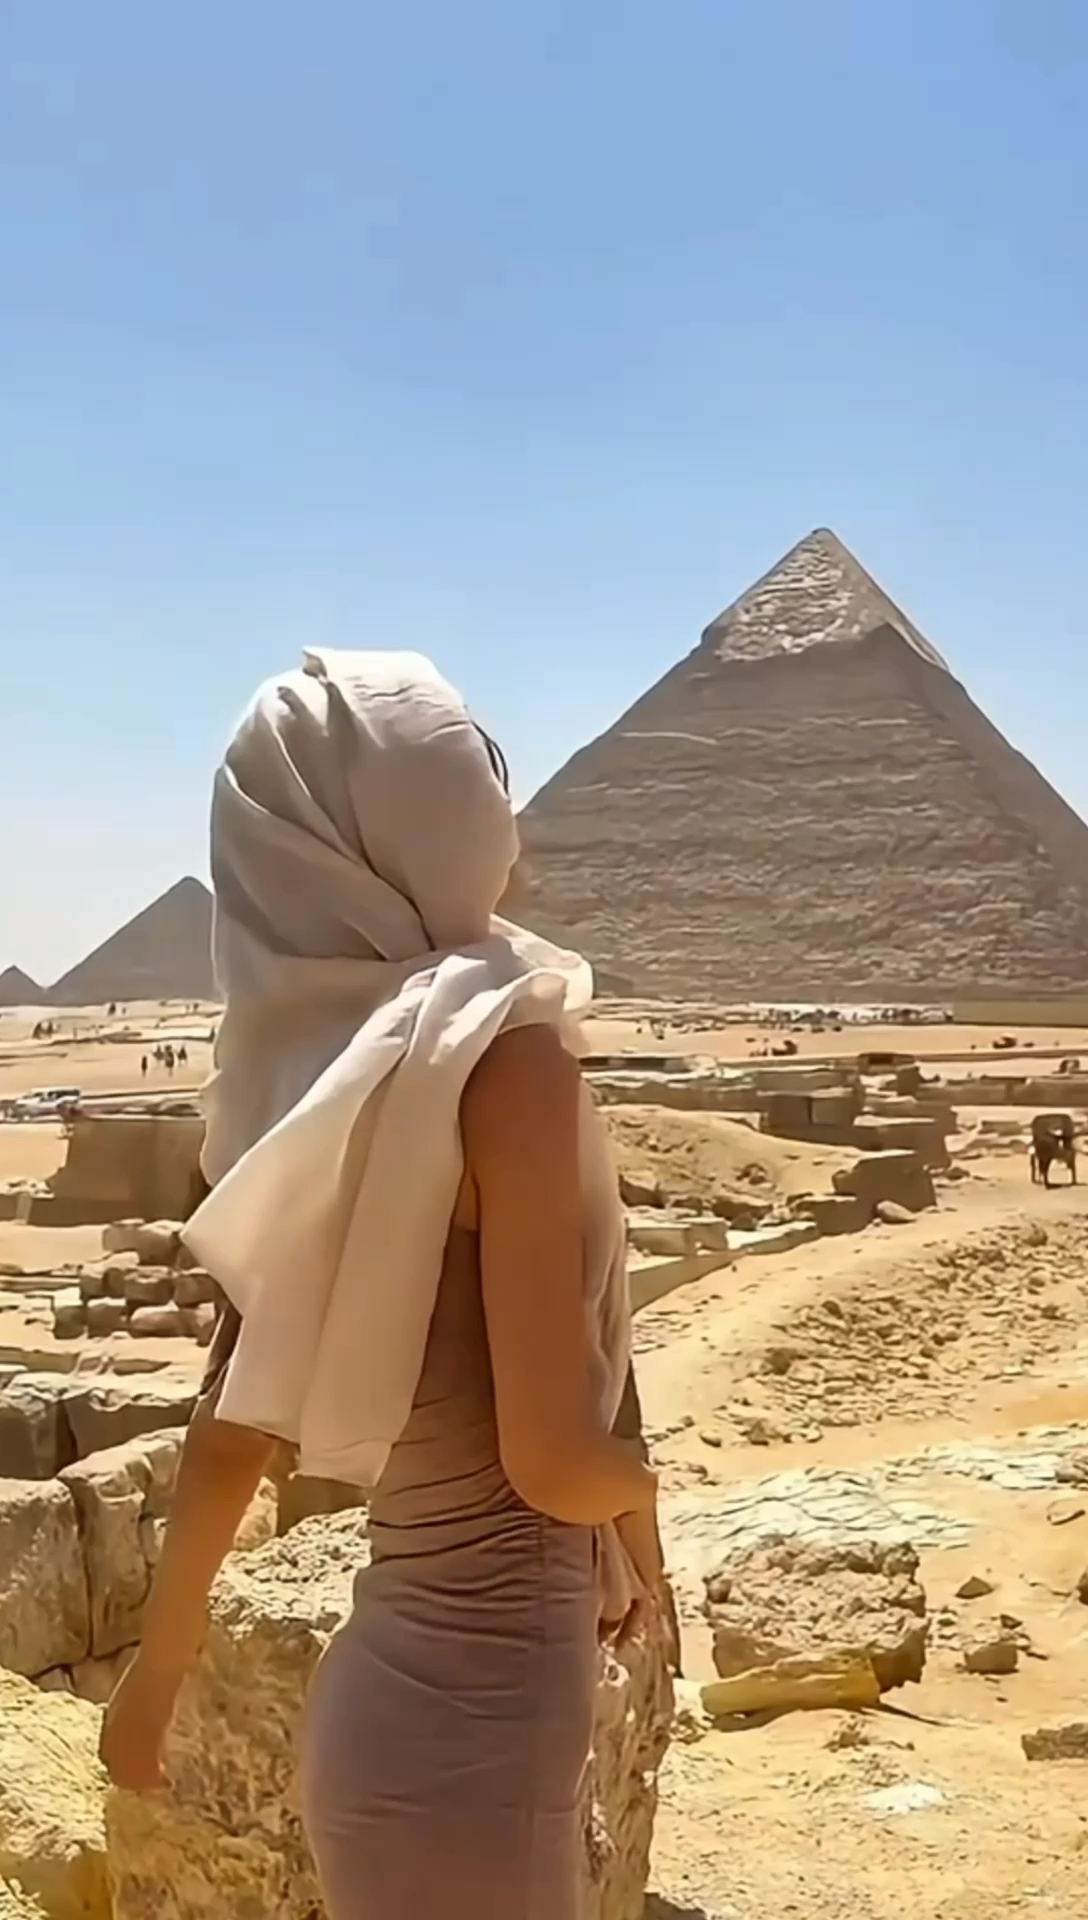 请问埃及怎么走？ #旅行推荐官 #我是旅行大玩家 #英国出发 #英国留学生 #埃及旅行